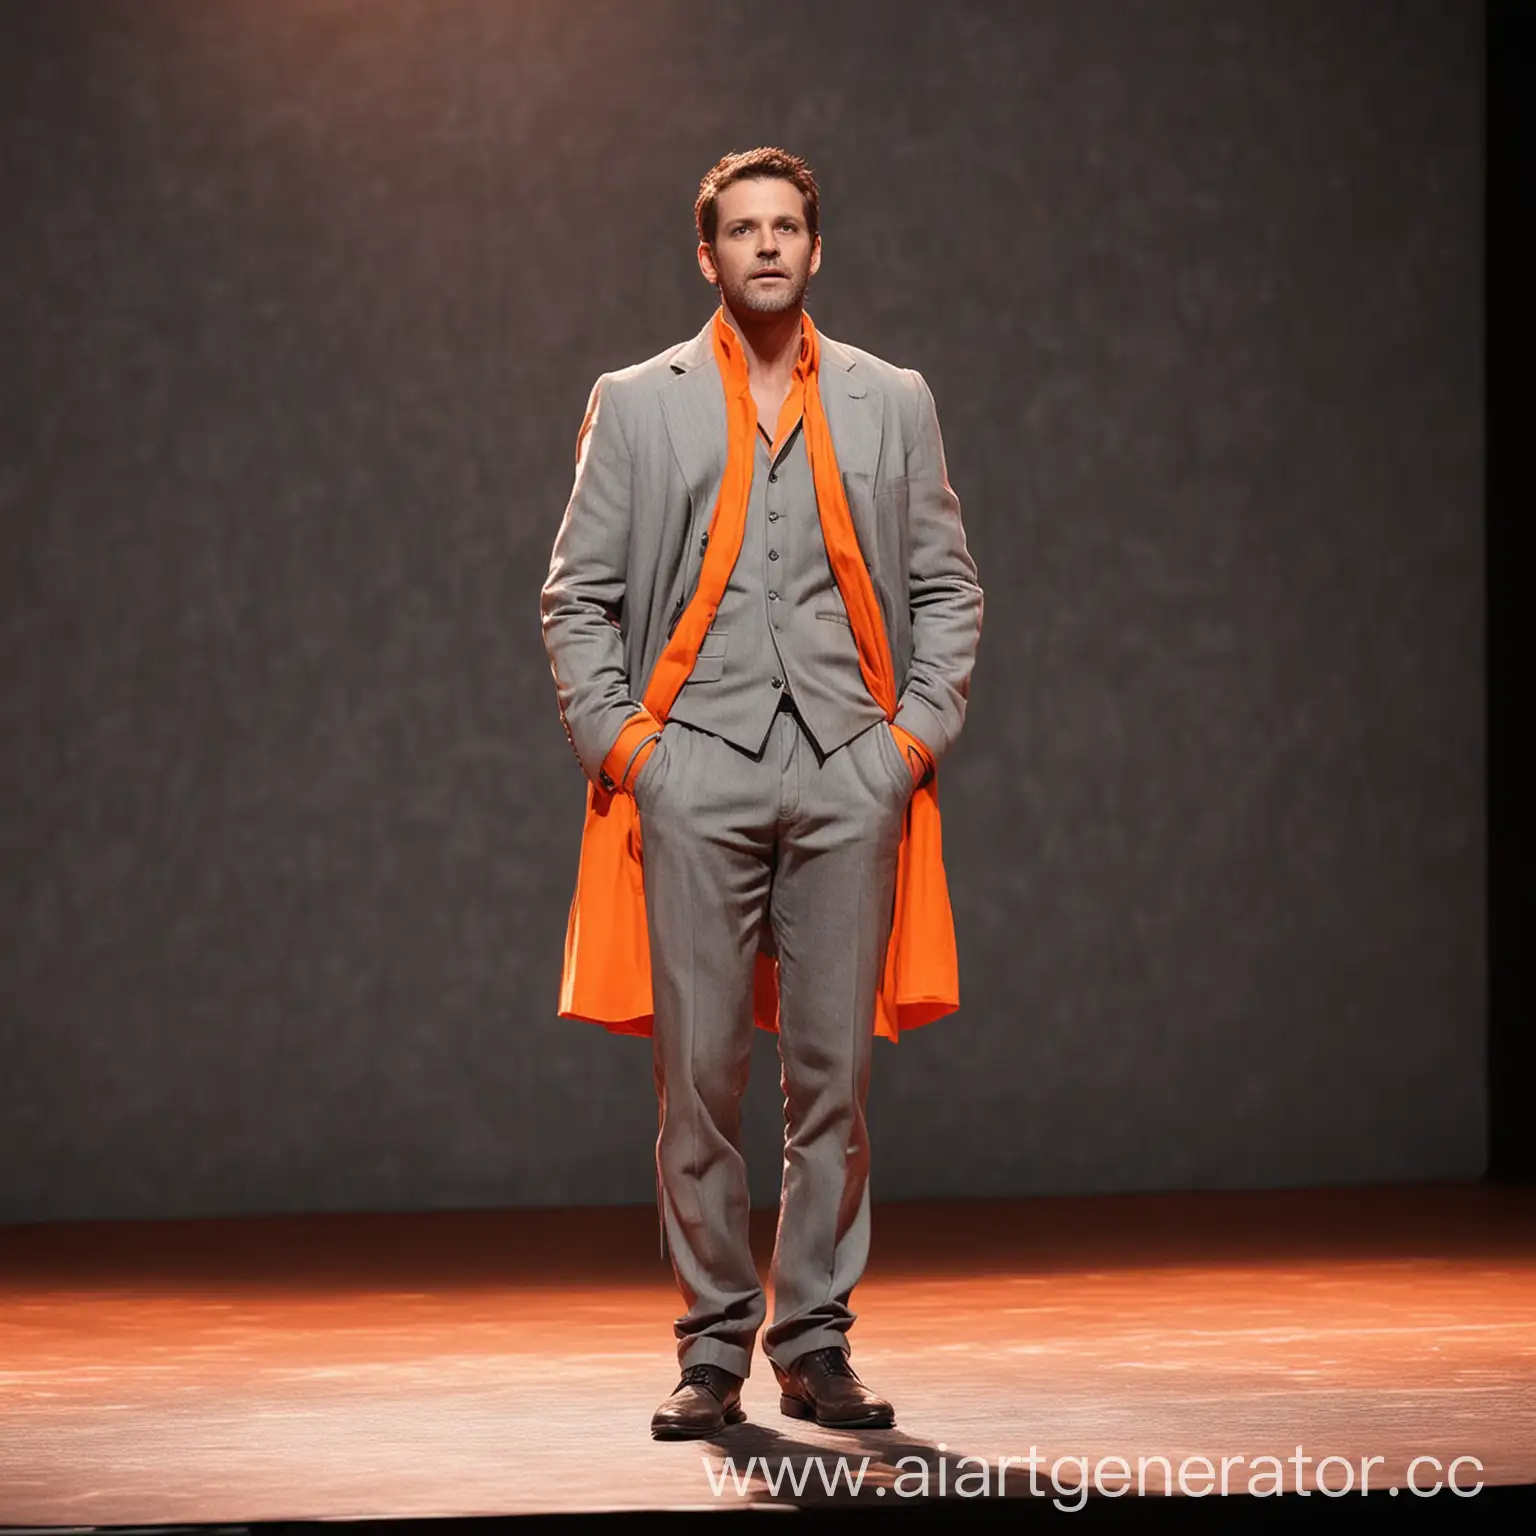 актер на сцене картинка в серых и оранжевых цветах